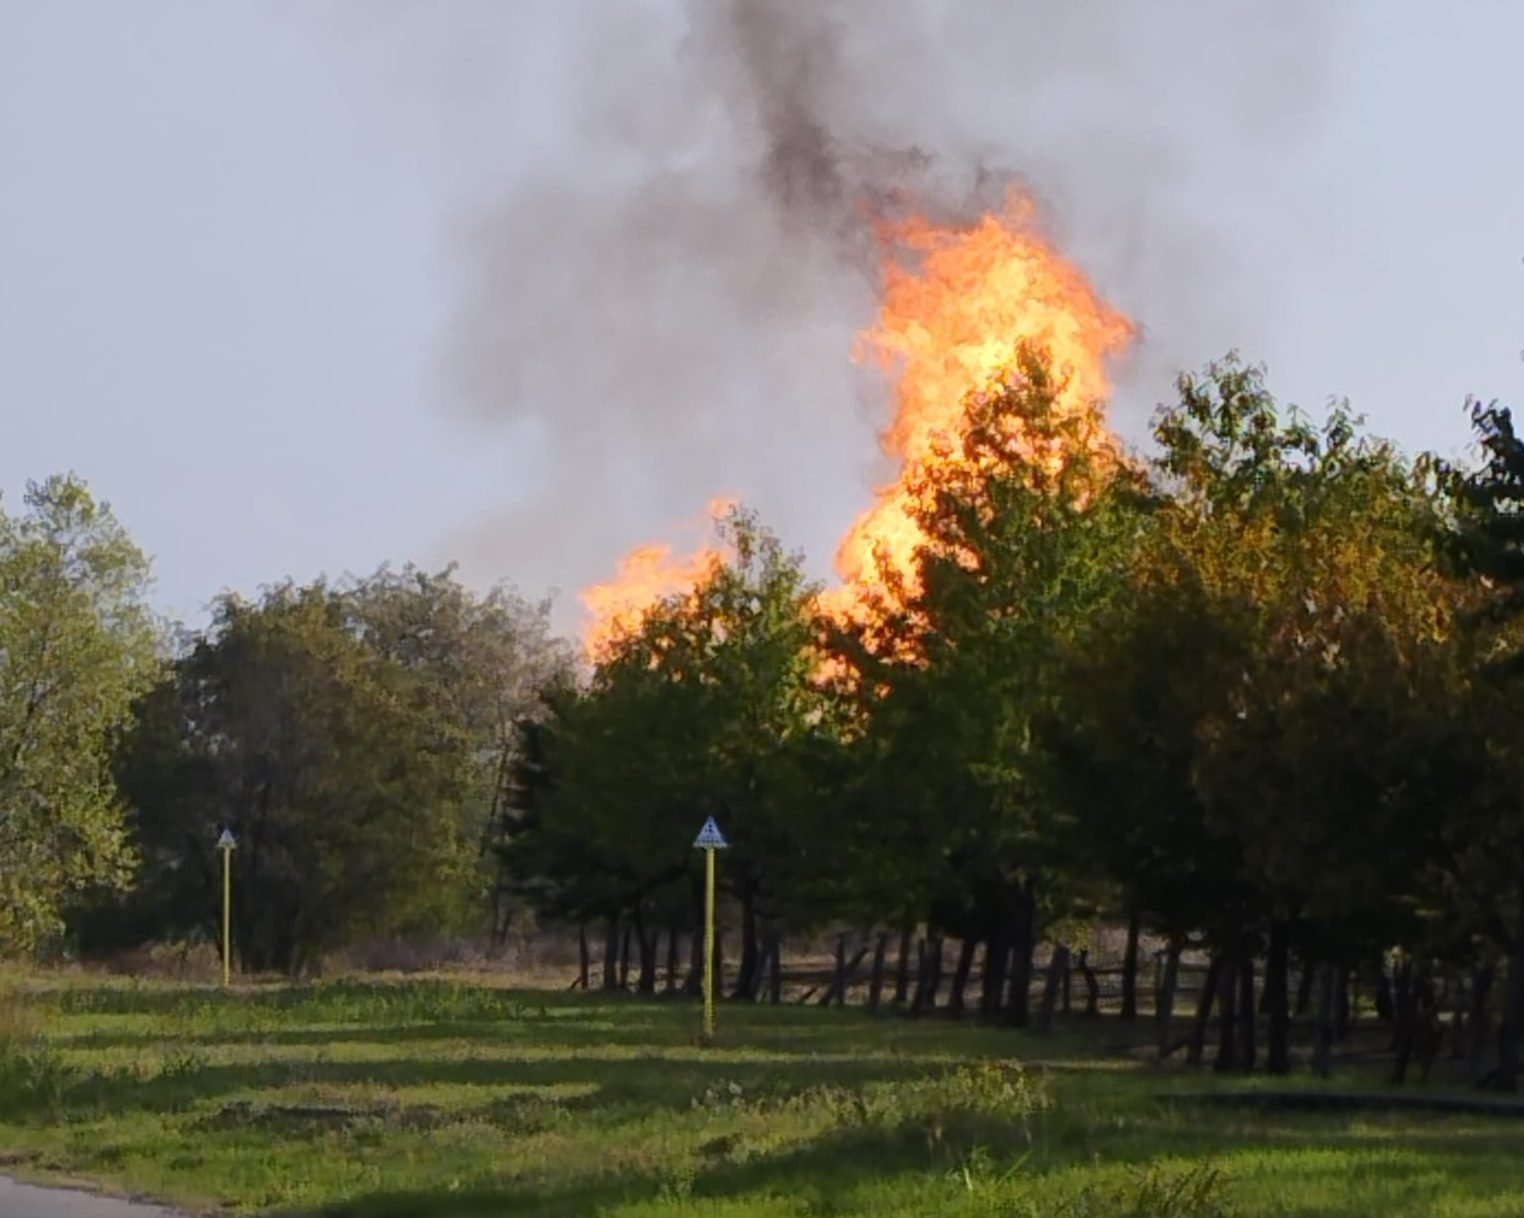 Incendio tra Cassano Spinola e Serravalle: fiamme e fumo dall’area industriale